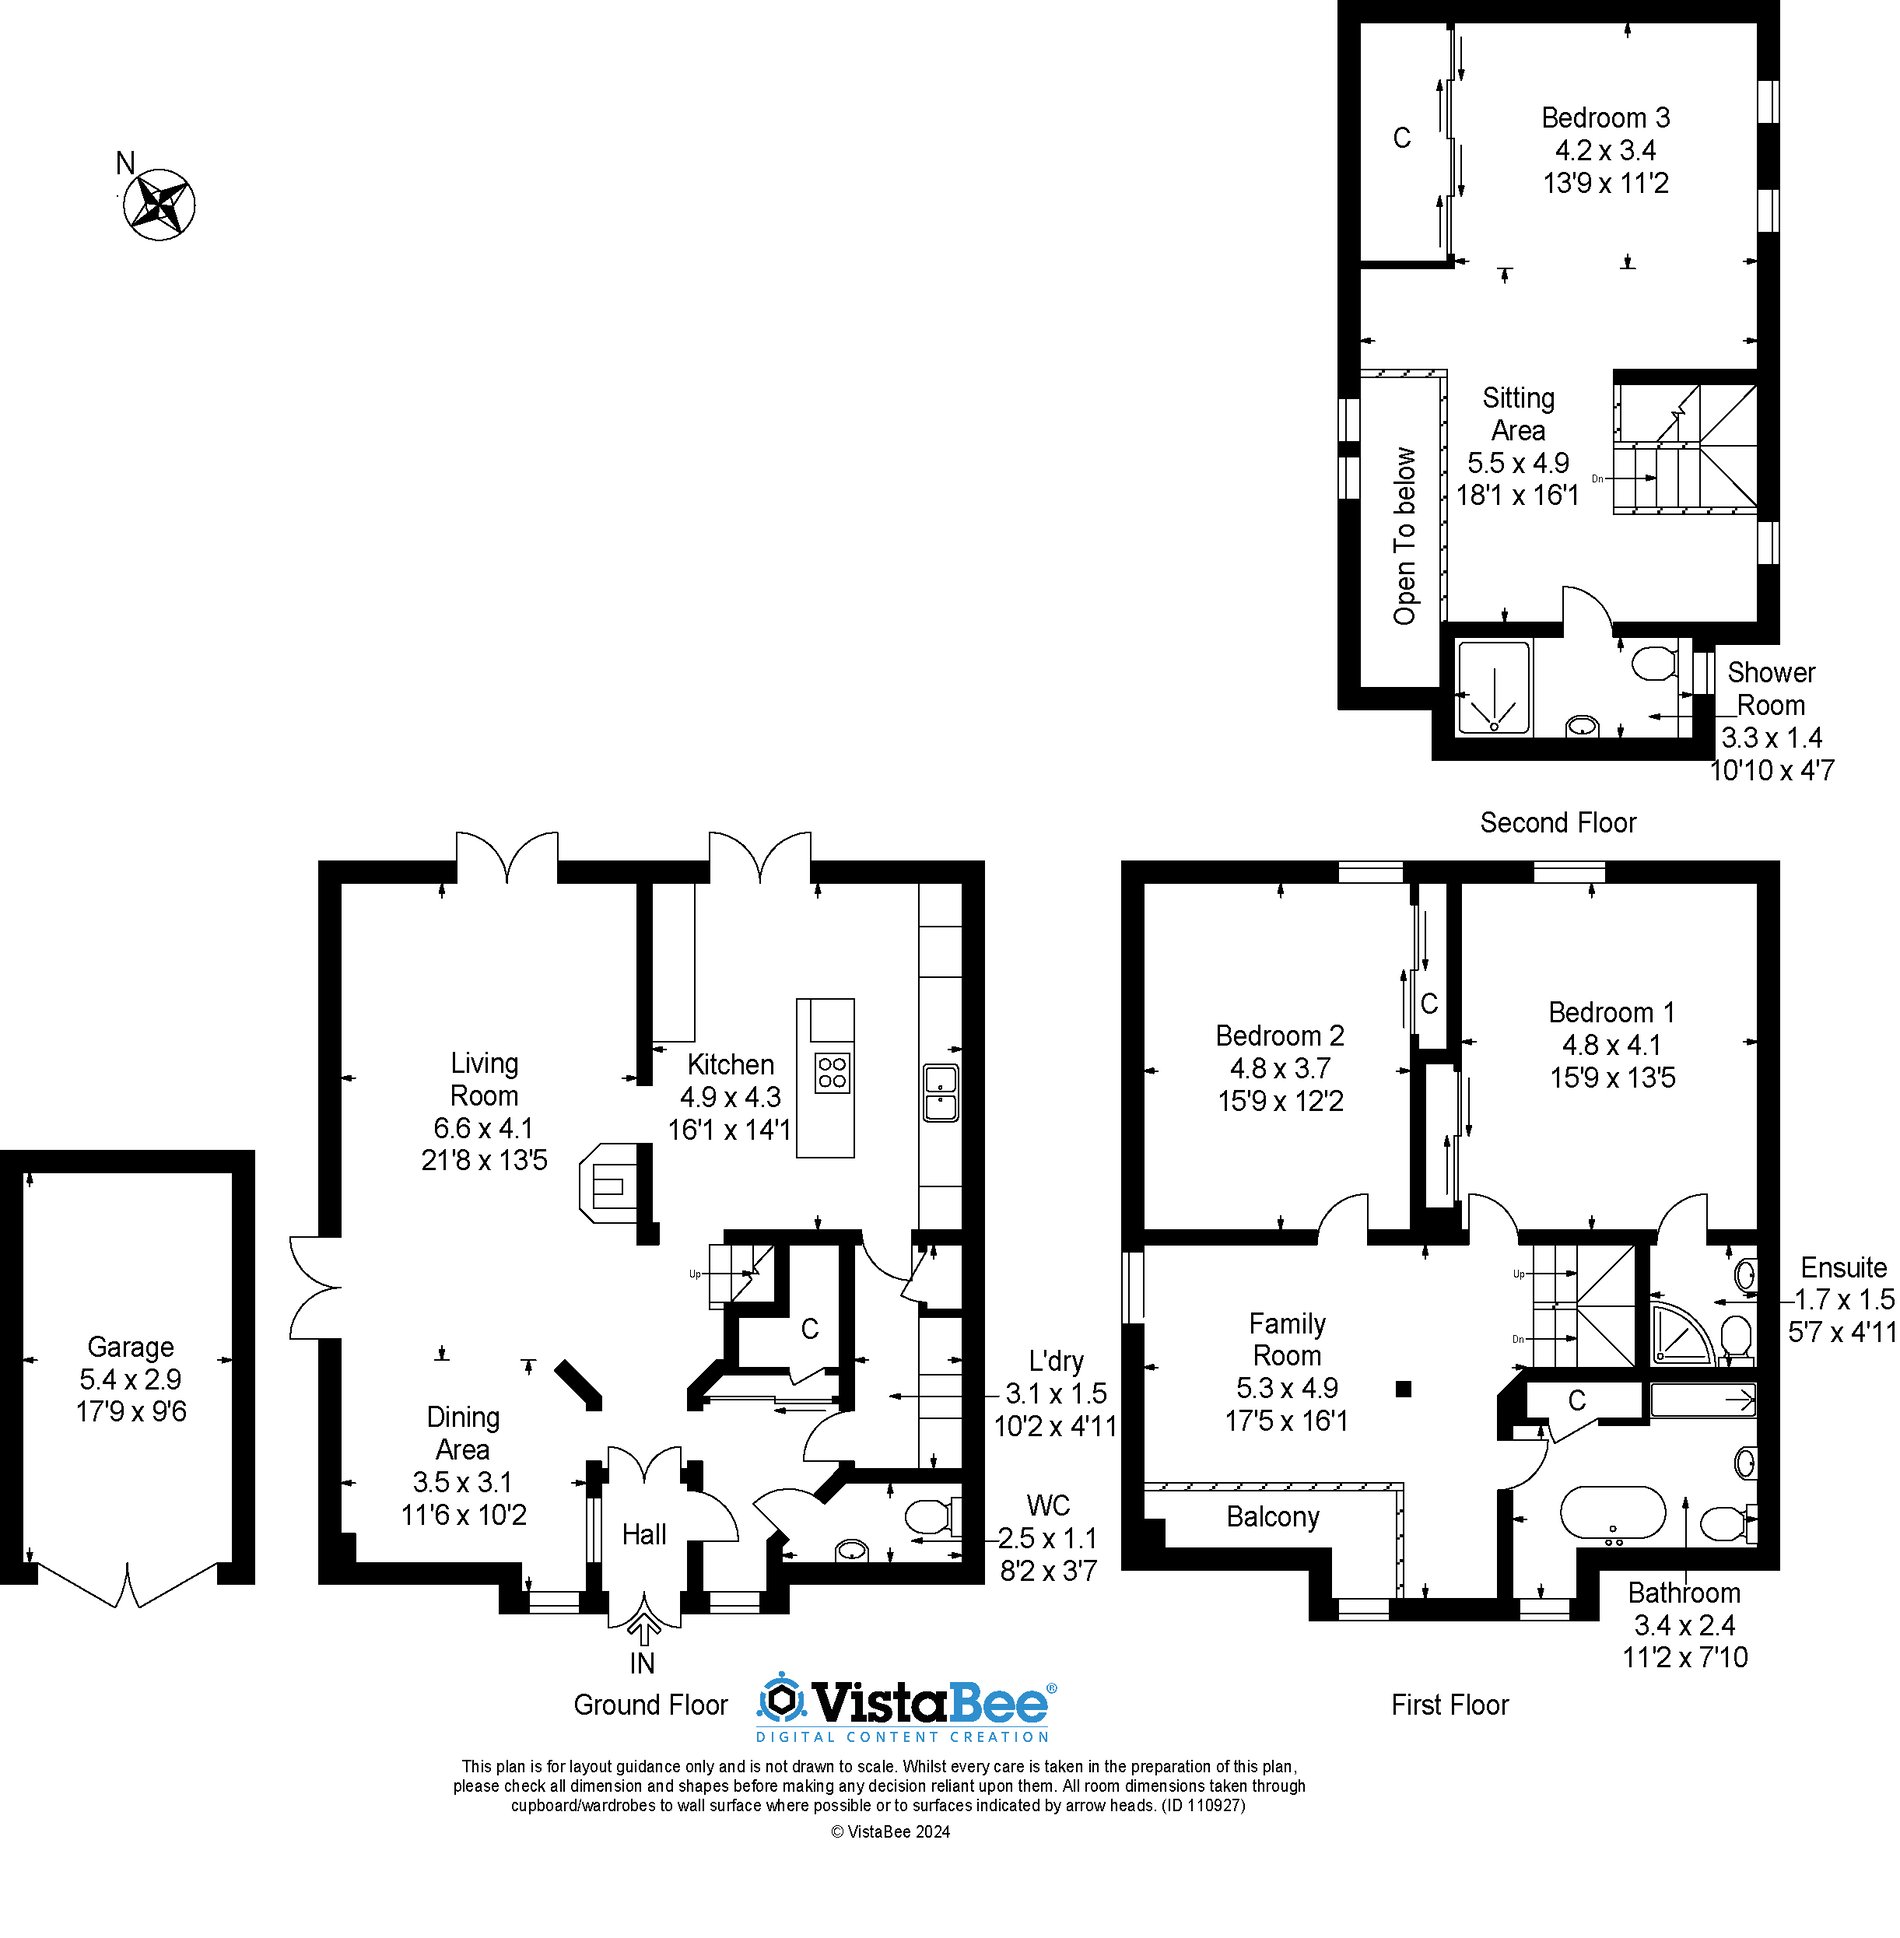 3 bed for sale, Dunblane - Property floorplan